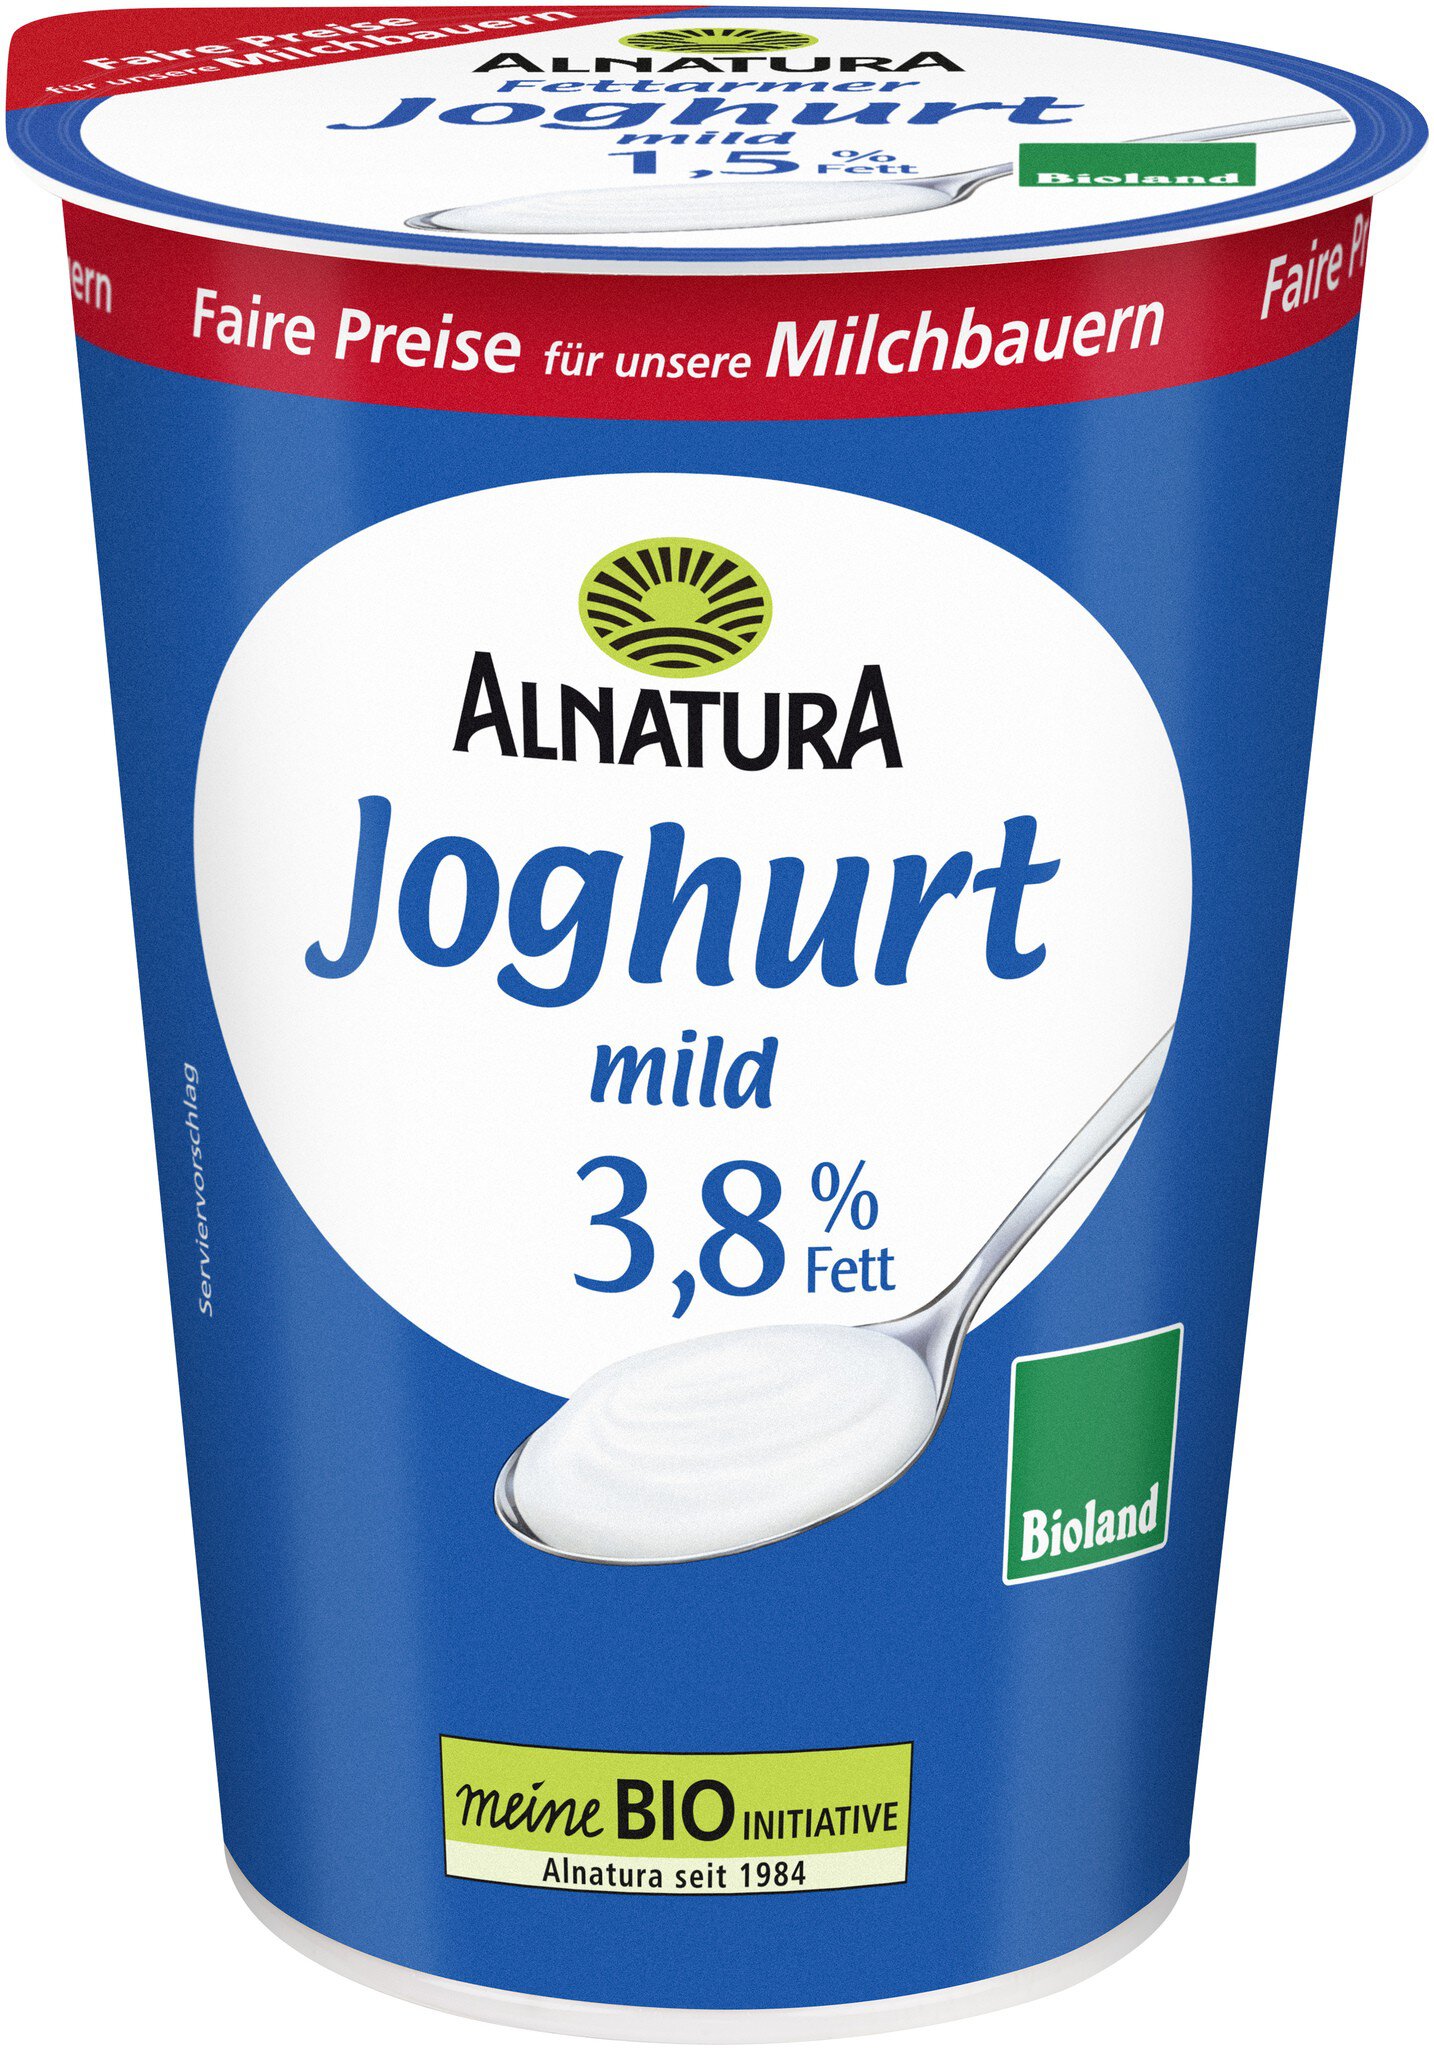 Joghurt mild 3,8 % Fett (500 g) in Bio-Qualität von Alnatura